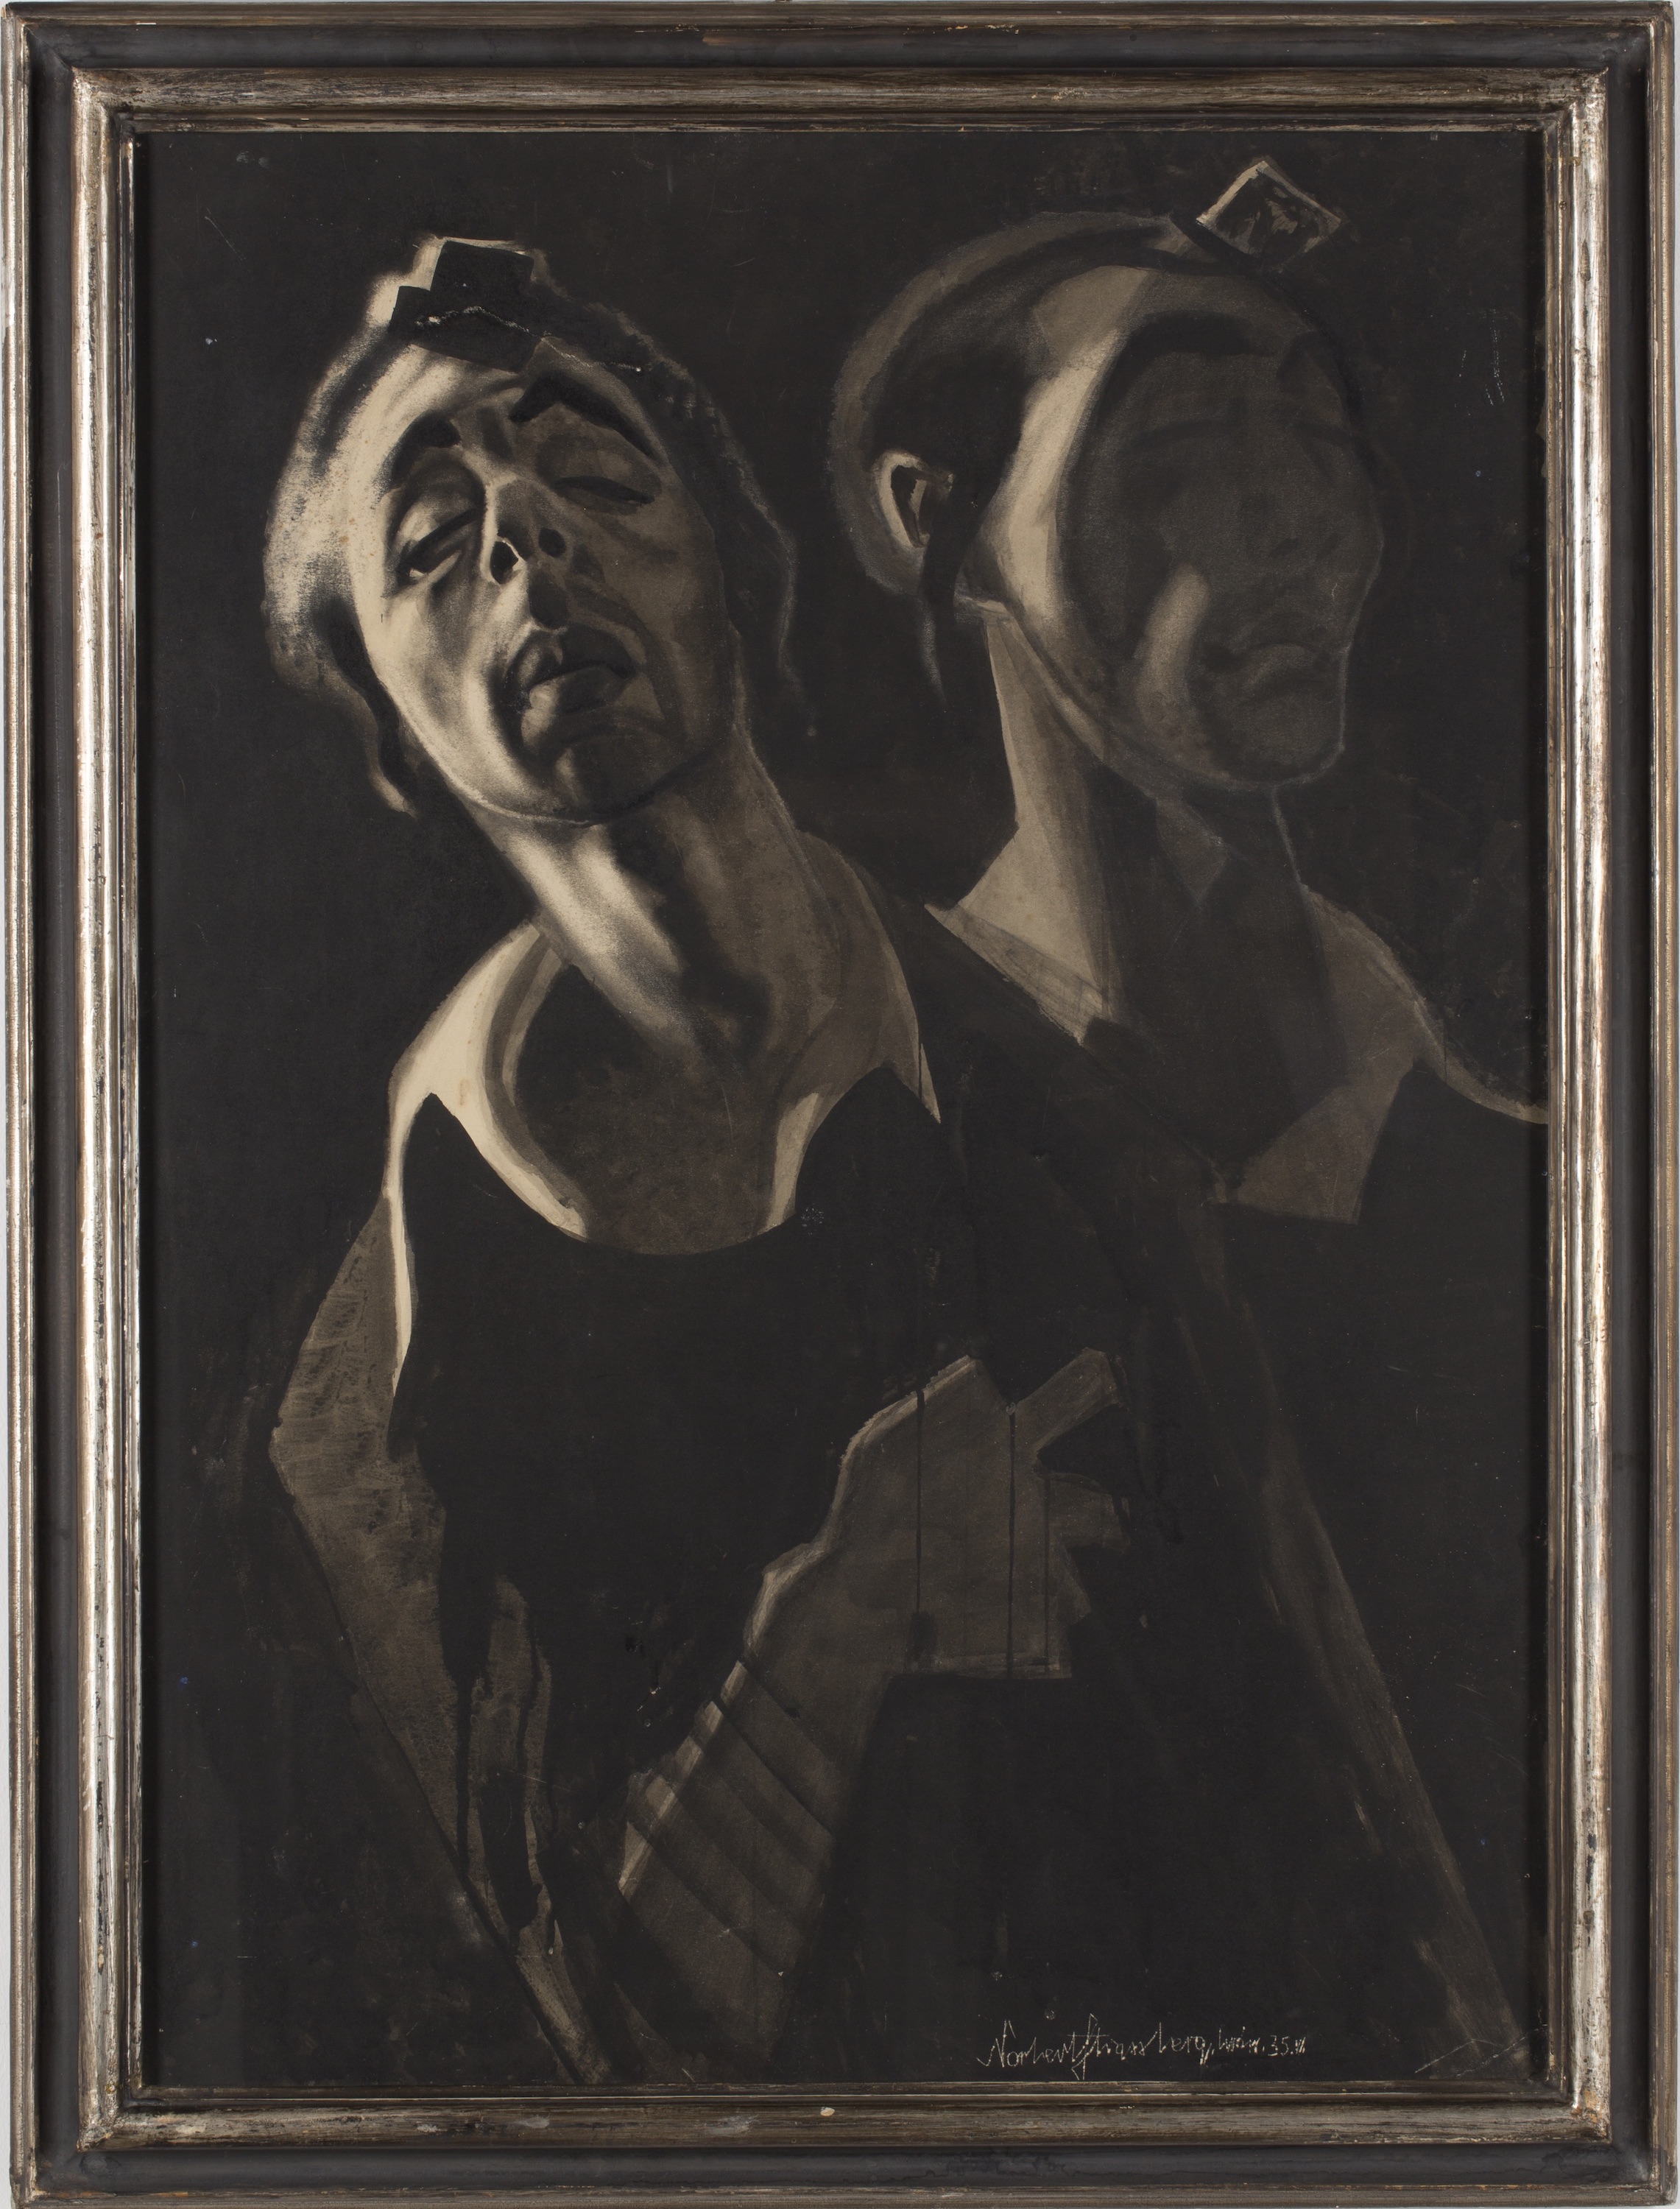 Extaz (rugăciunea de dimineață) by Norbert Strassberg - 1935 - 85 x 62 cm 